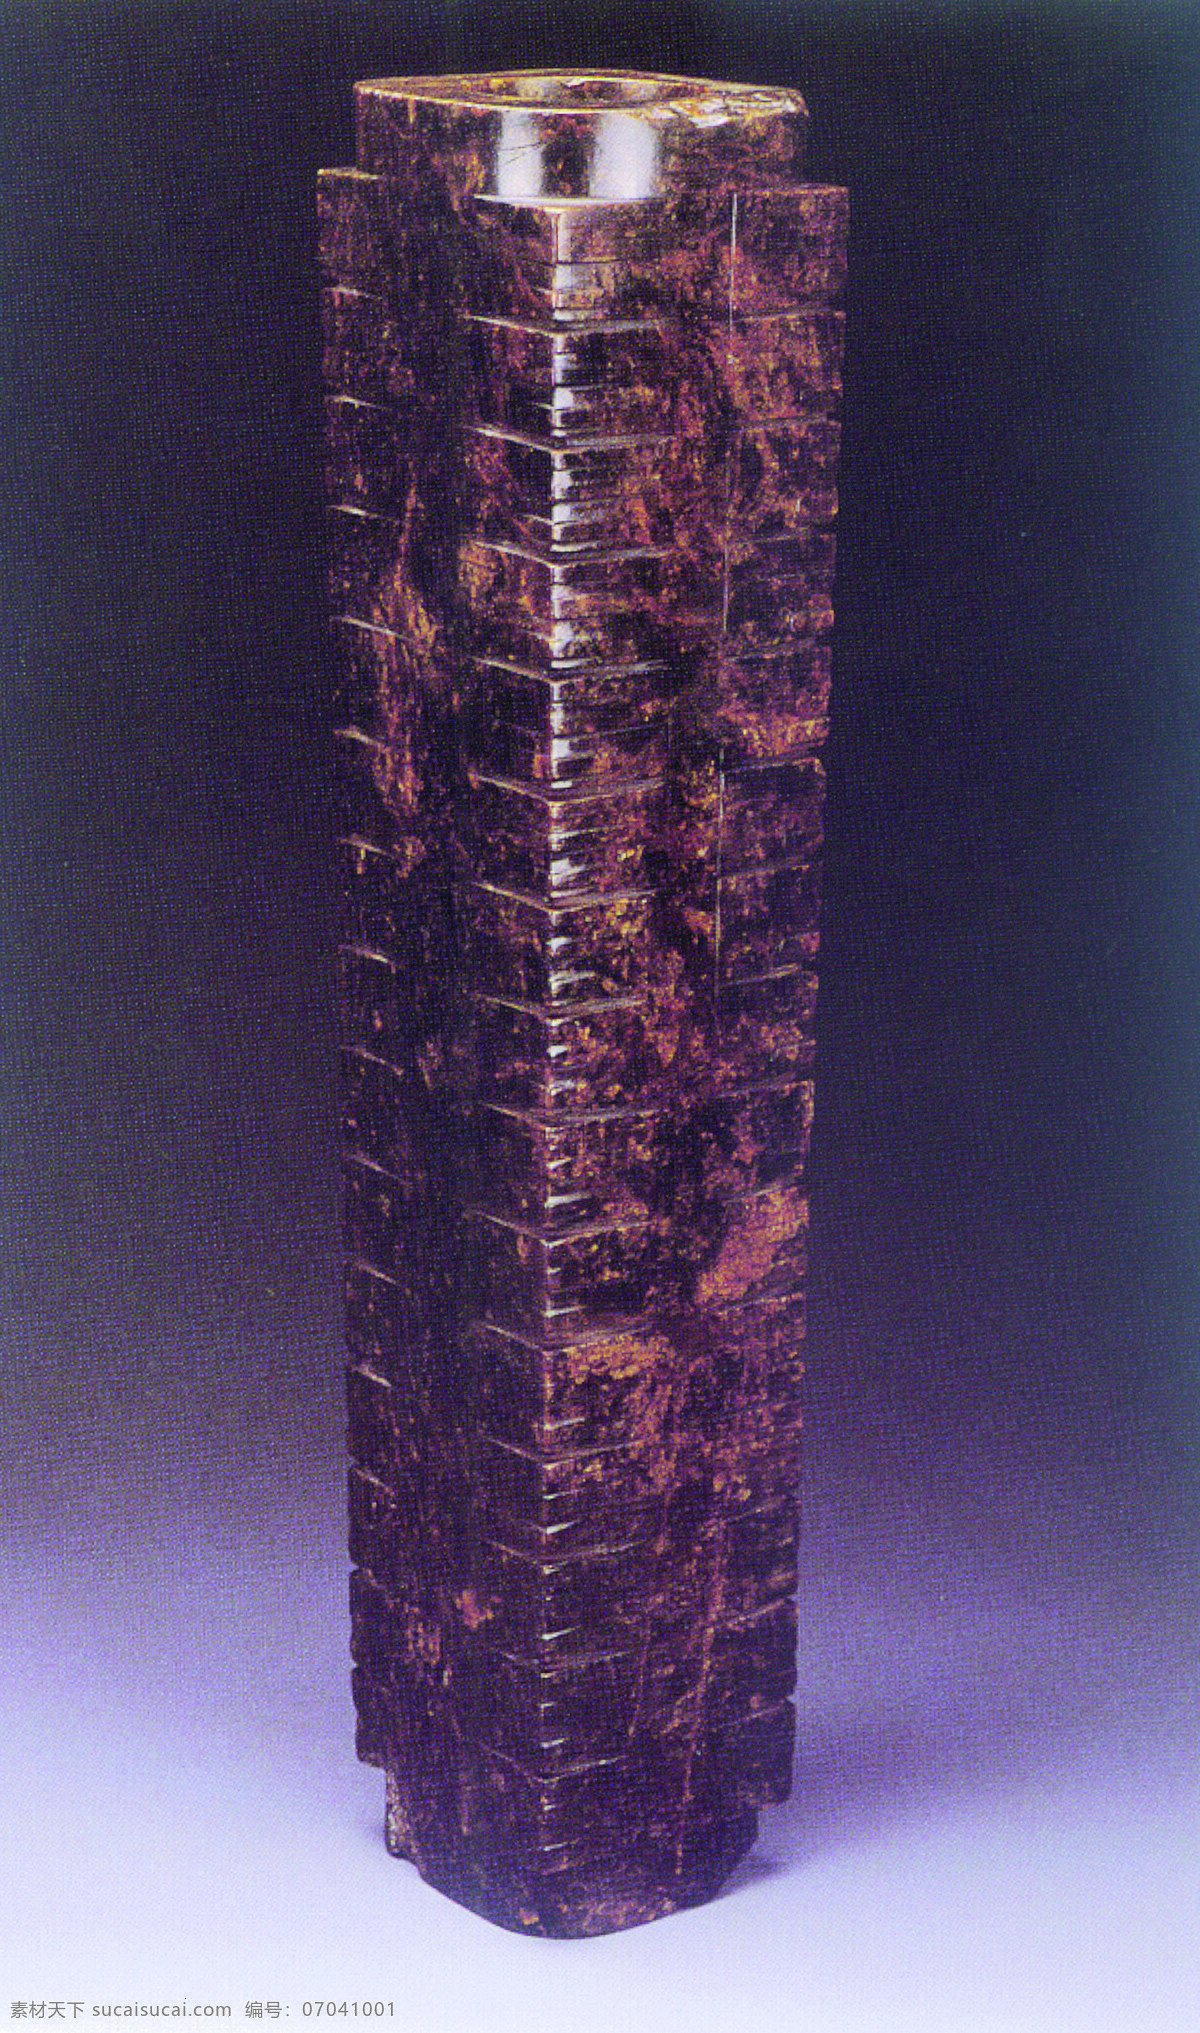 玉石免费下载 雕塑 工艺品 古董 琥珀 玛瑙 石器 玉佩 玉石 中国风 中国文化 中华艺术绘画 文化艺术